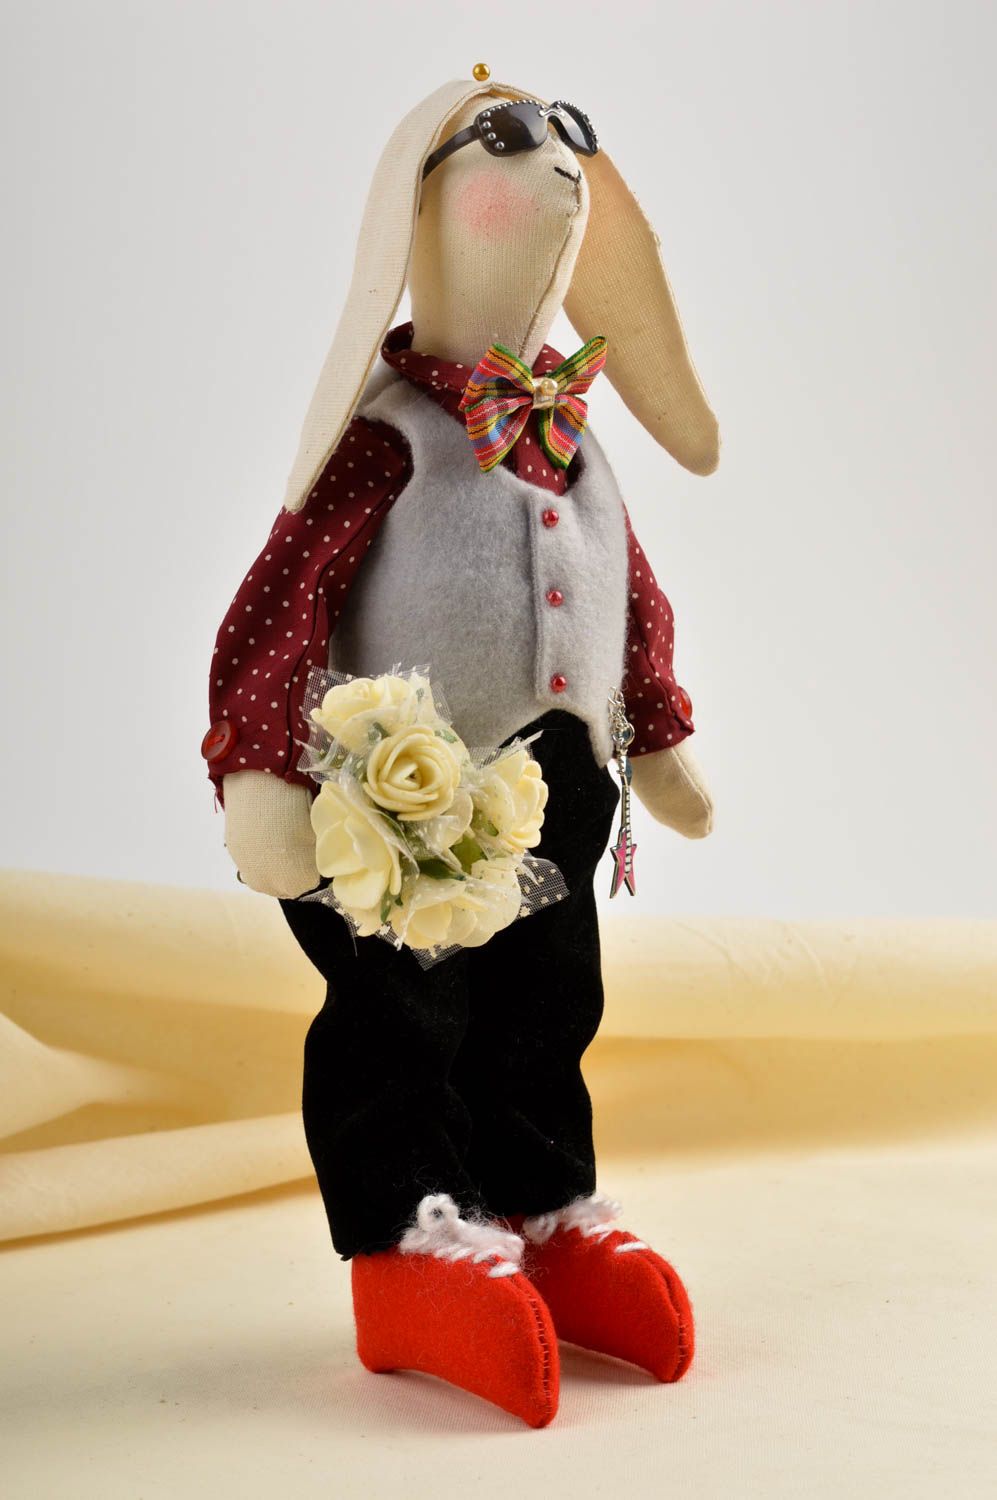 Handgefertigt Künstler Puppe Wohnzimmer Deko kreative Geschenkidee einmalig foto 1